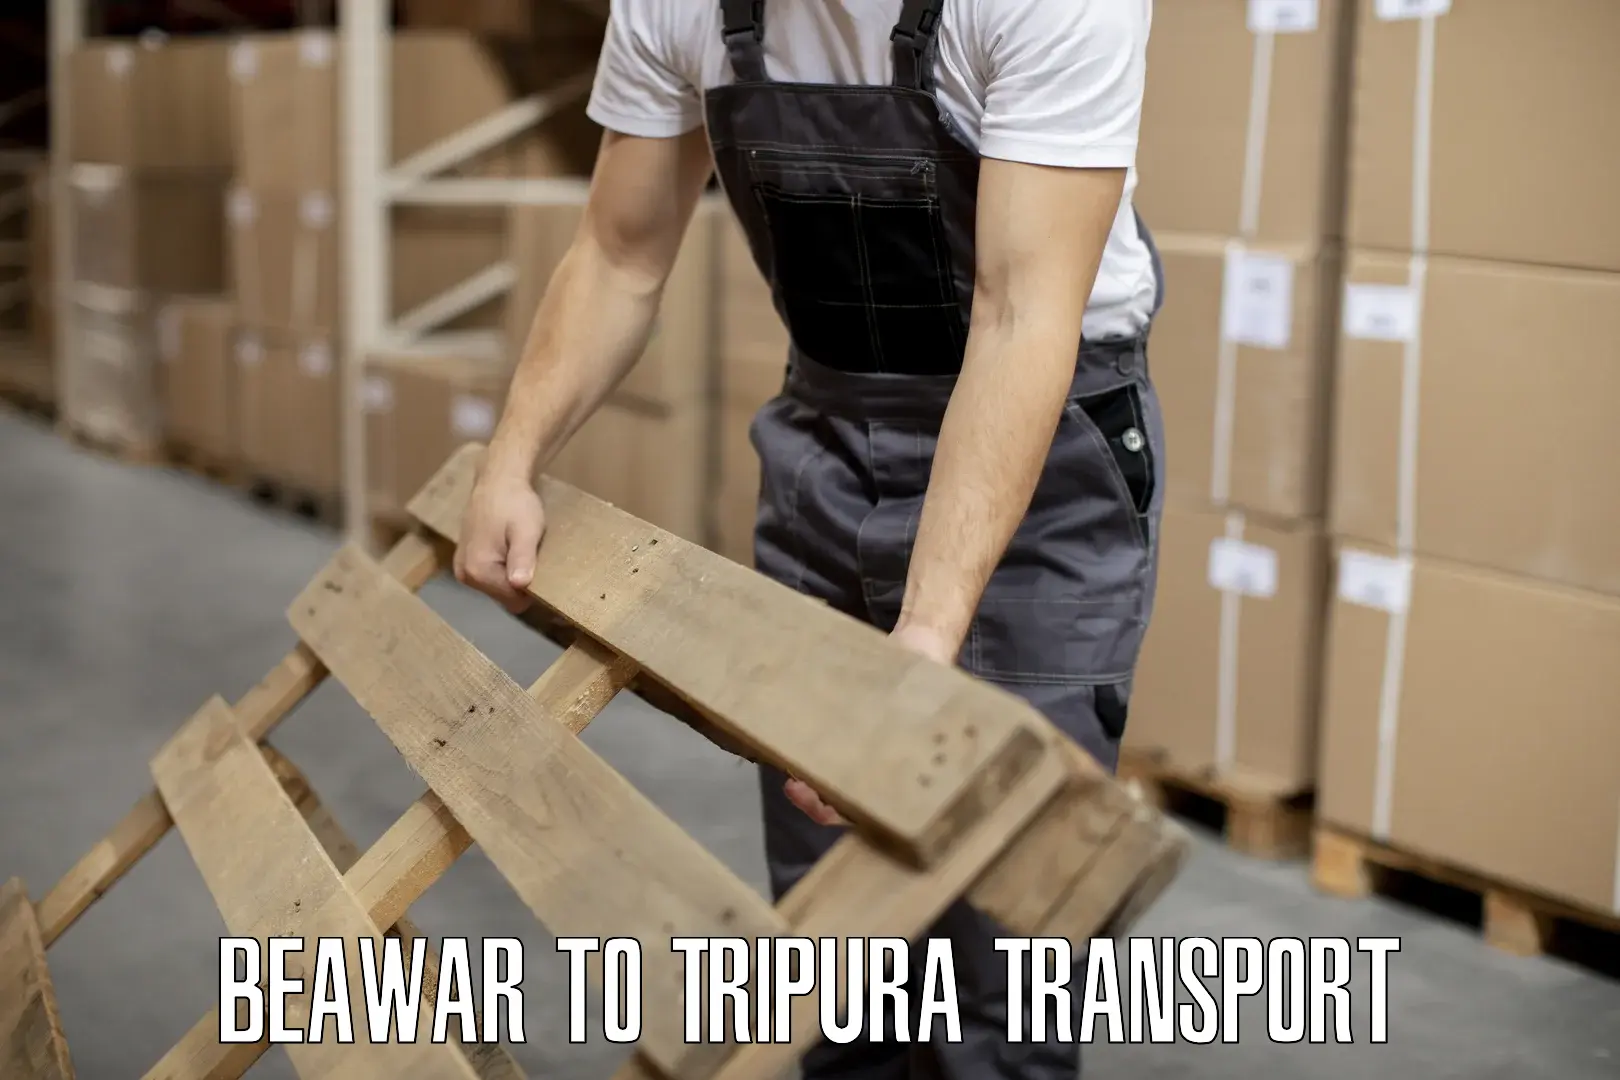 Furniture transport service in Beawar to Manu Bazar